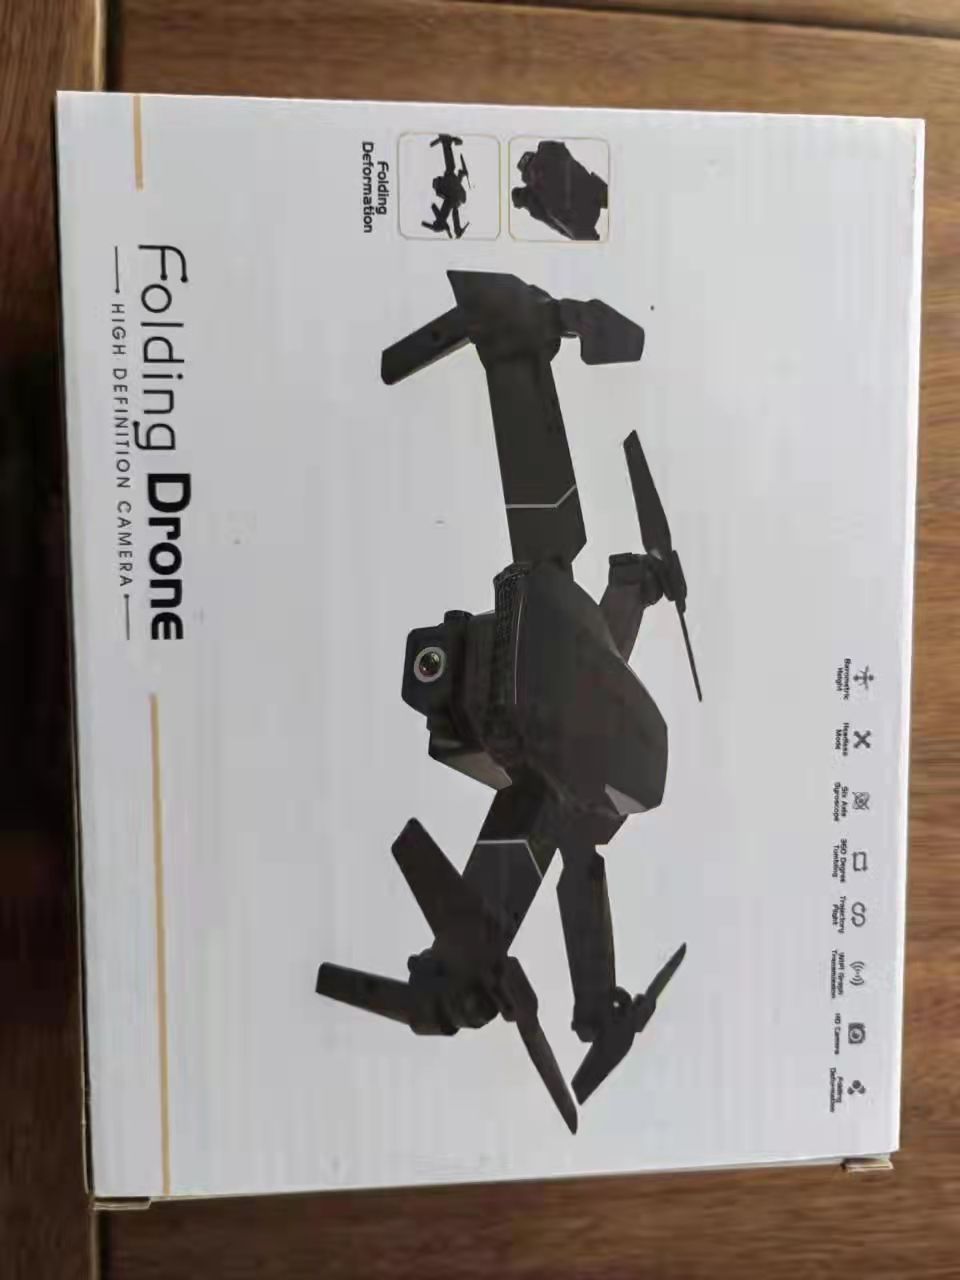 ข้อมูลเพิ่มเติมของ Philips original E88 Pro Drone โดรนติดกล้อง HD 4k โดรนบังคับ โดรนควบคุมระยะไกล WIFI โดรนถ่ายภาพทางอากาศระดับ เครื่องบินโดรน